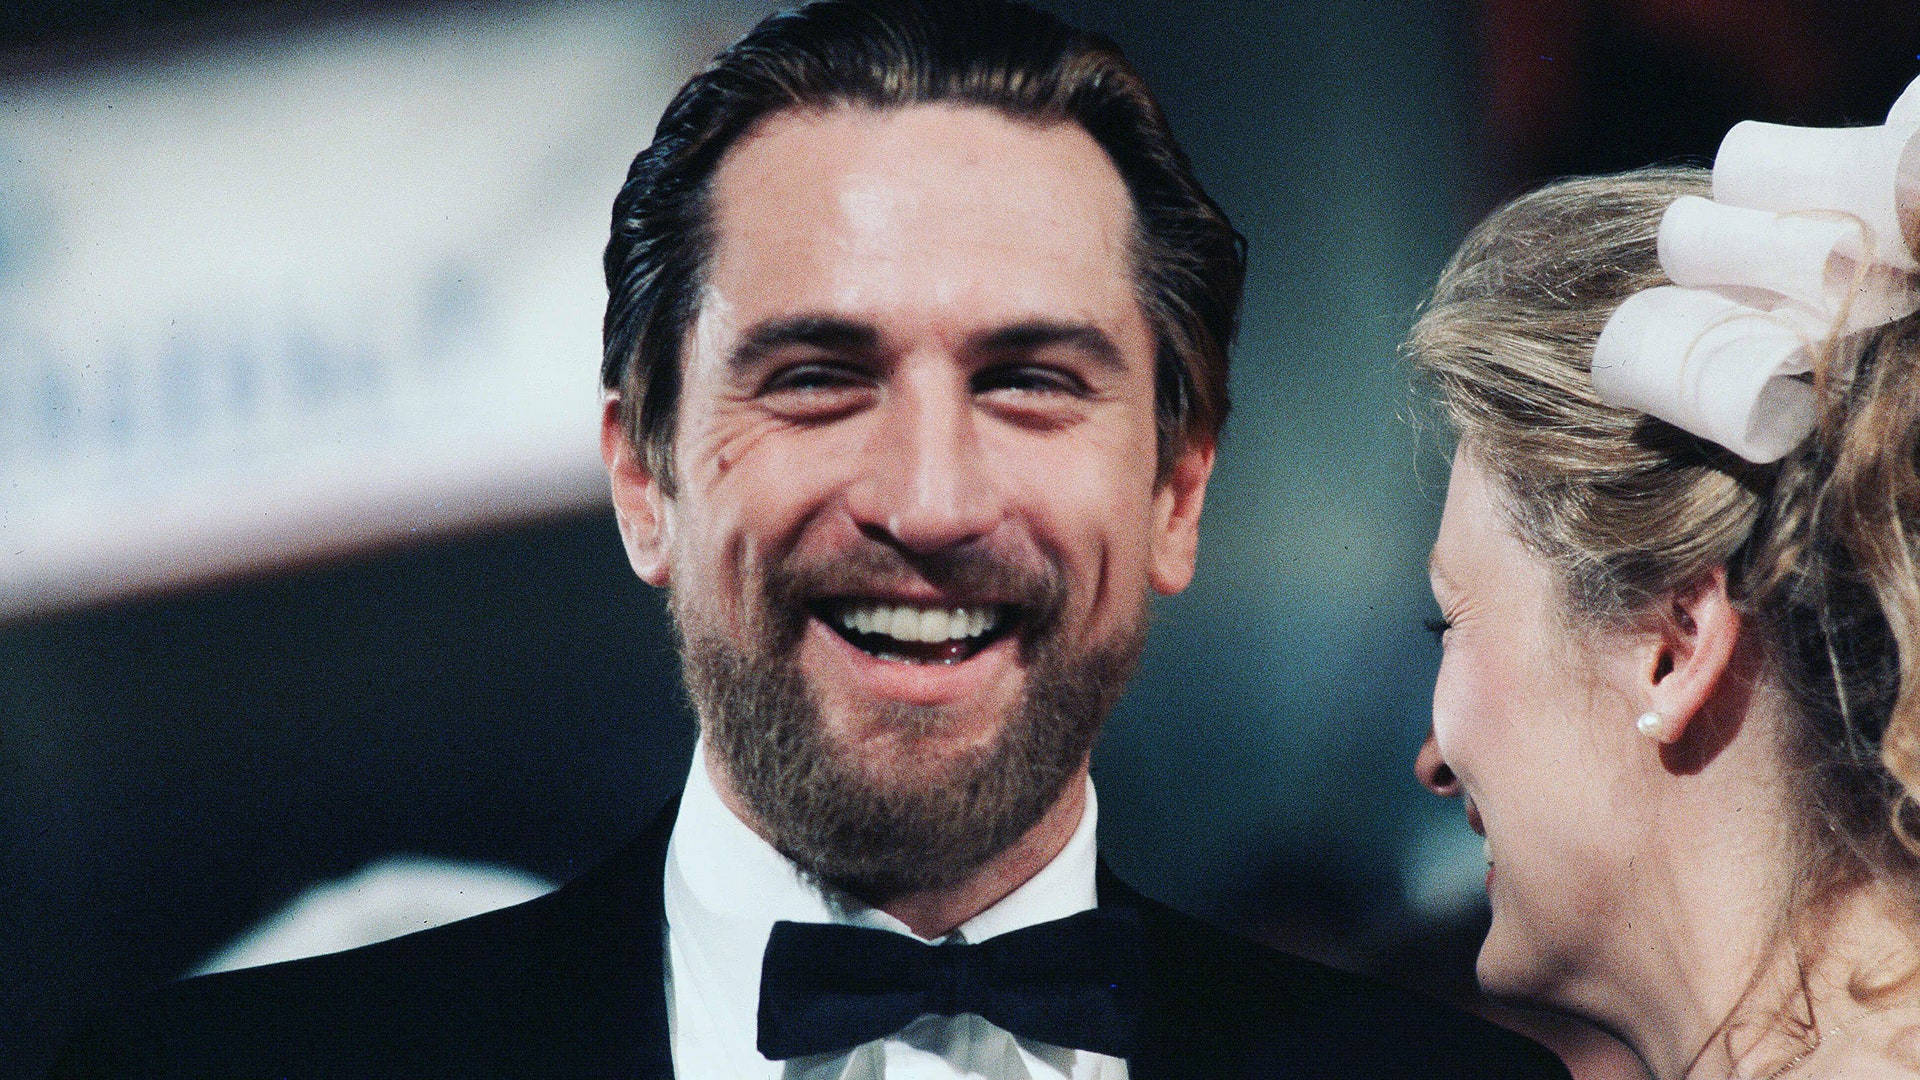 Charismatic Robert De Niro In Black Suit Background